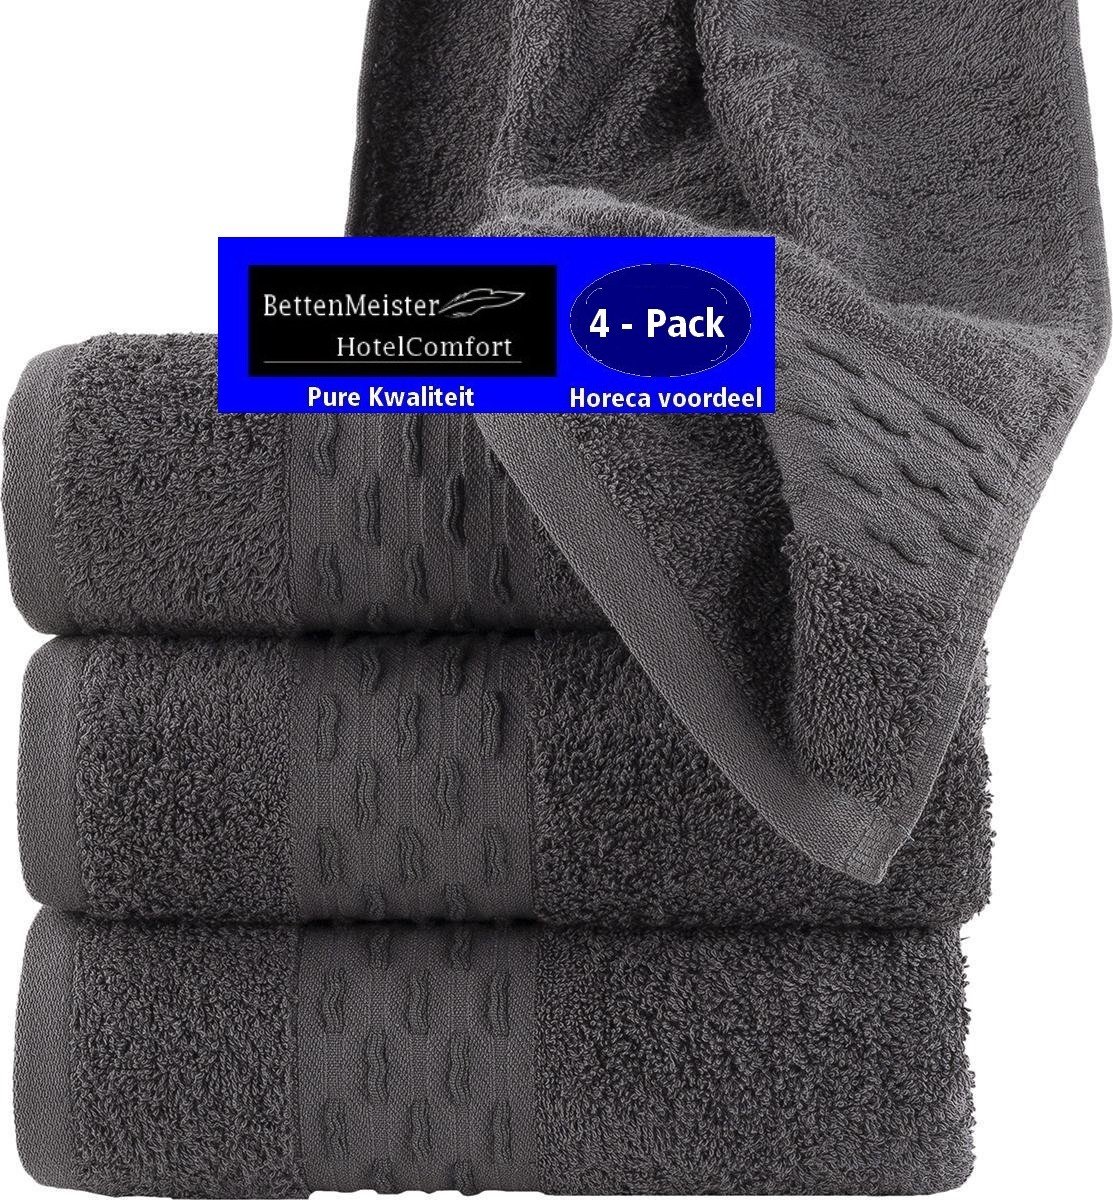 4 Pack Handdoeken - (4 stuks) golf jacquard antraciet 50x100 cm - Katoen badstof